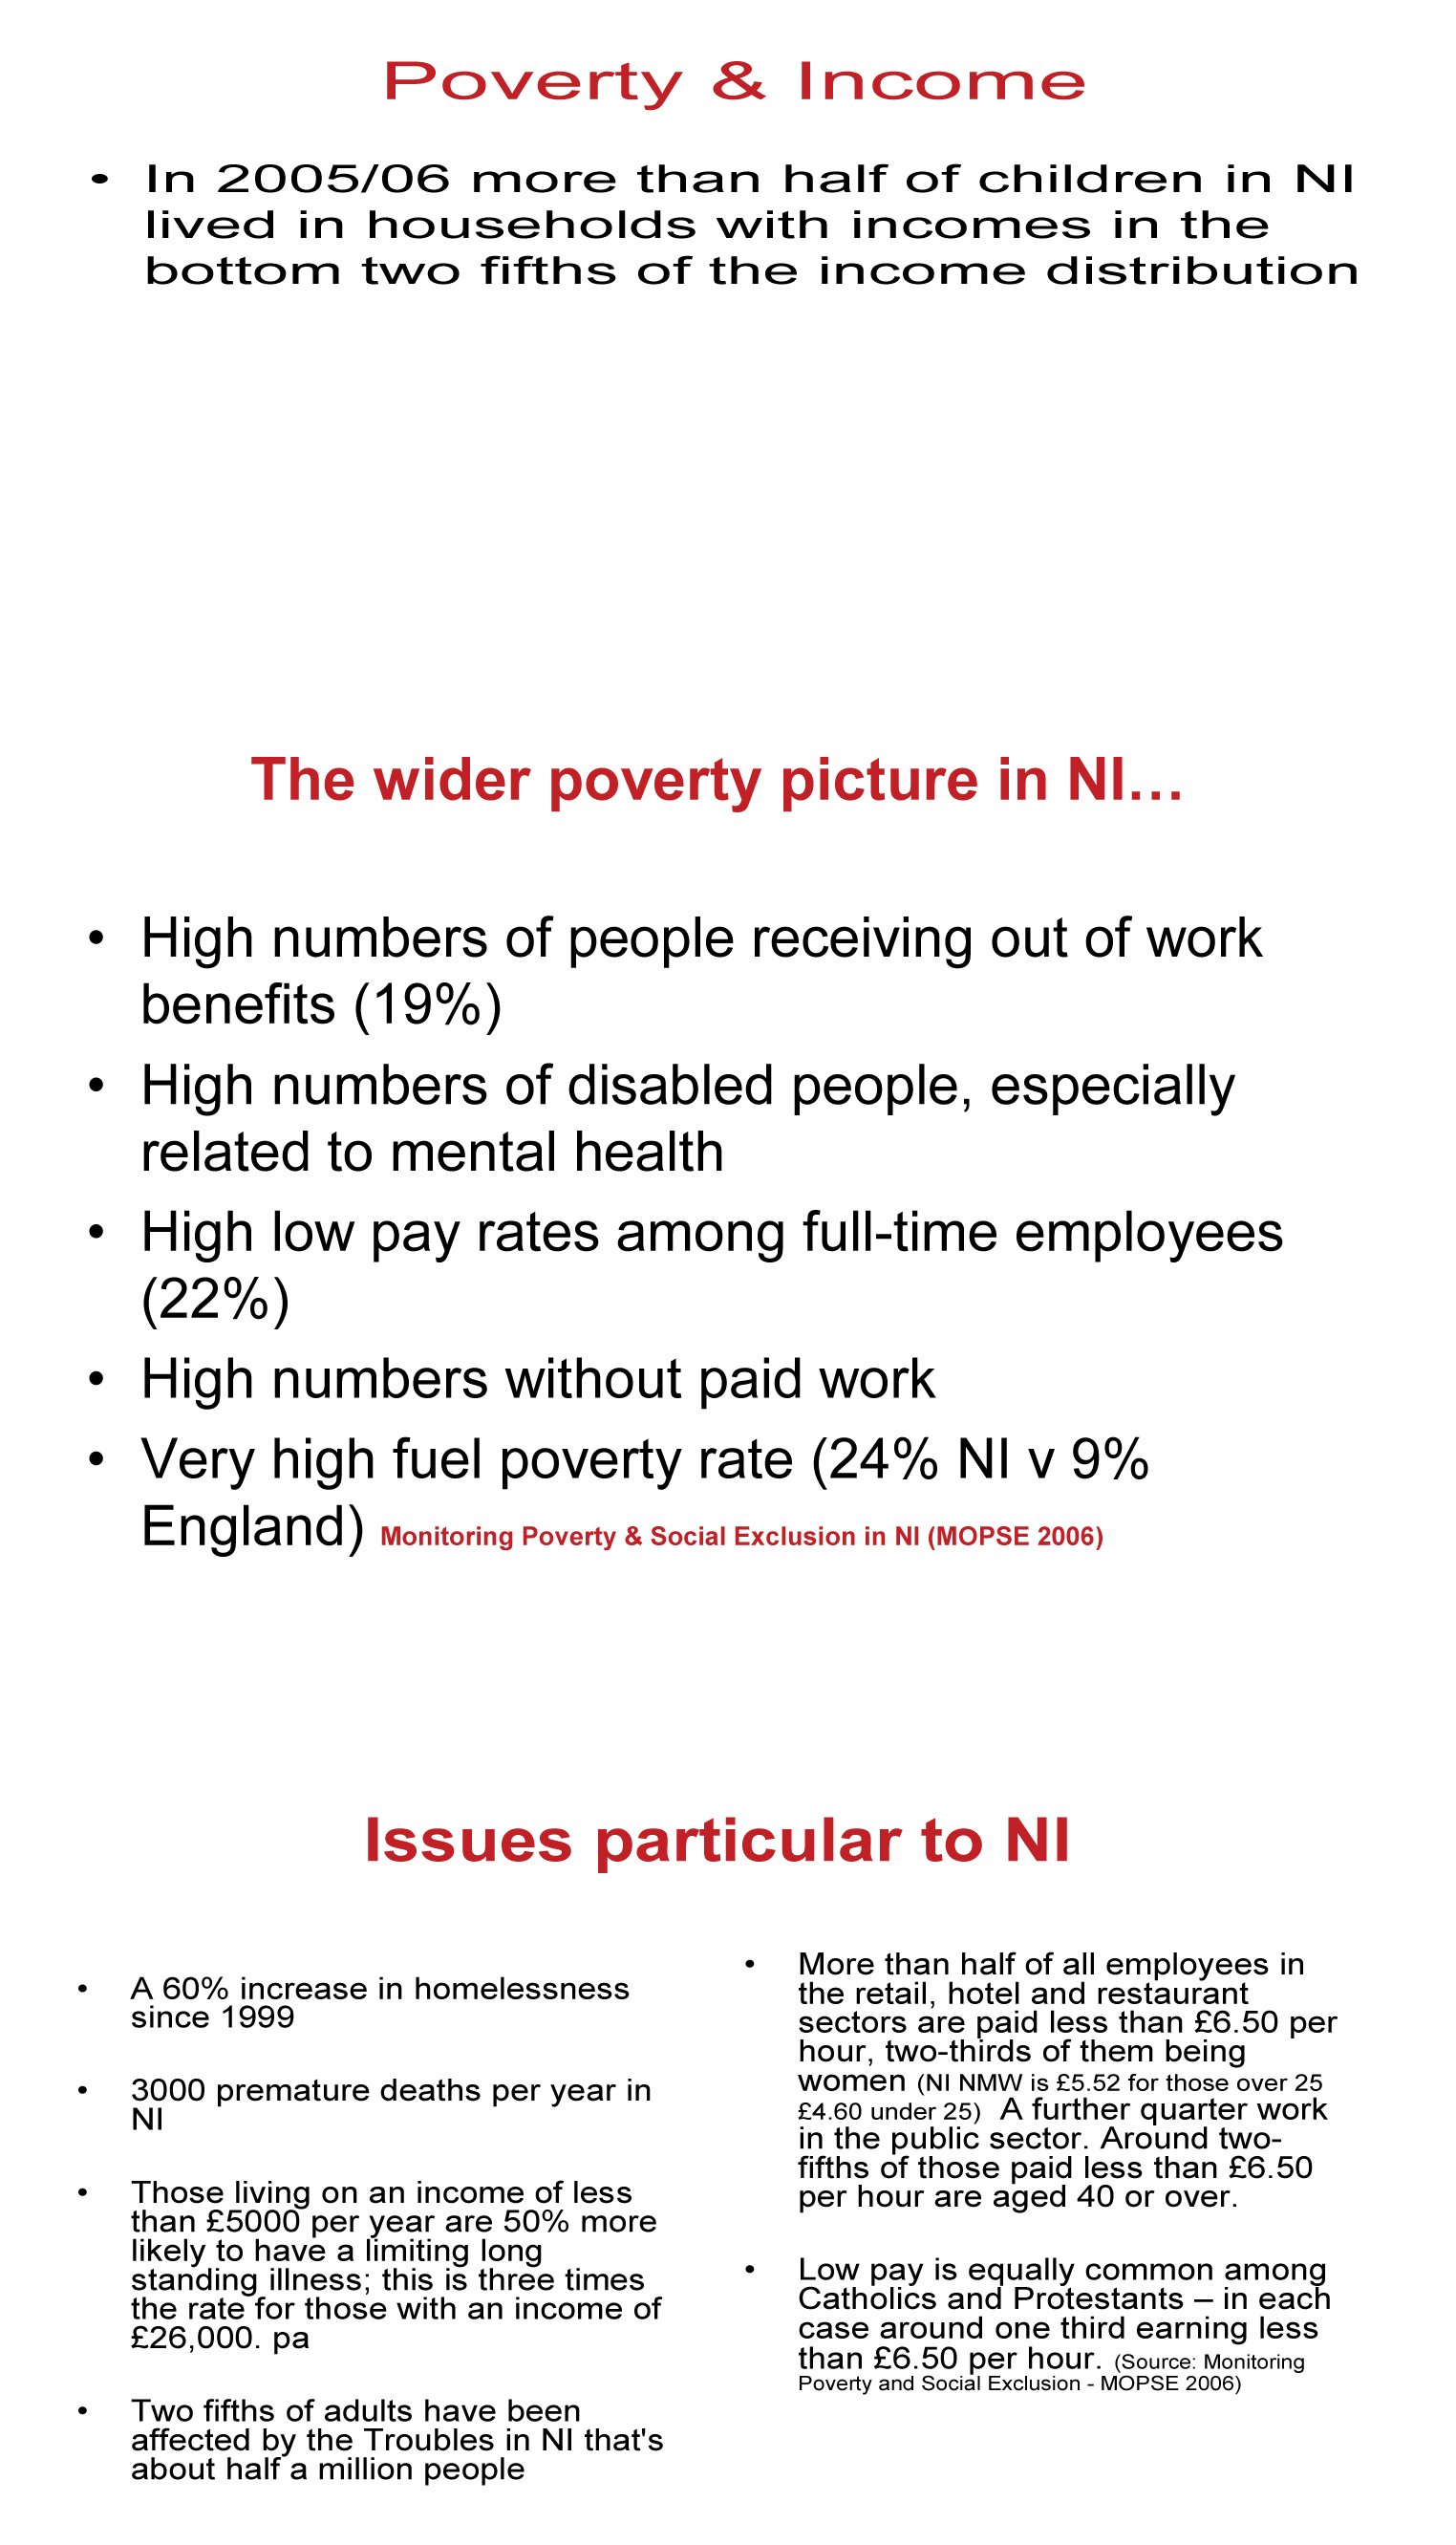 NI Anti-Poverty Network - written submission.pdf